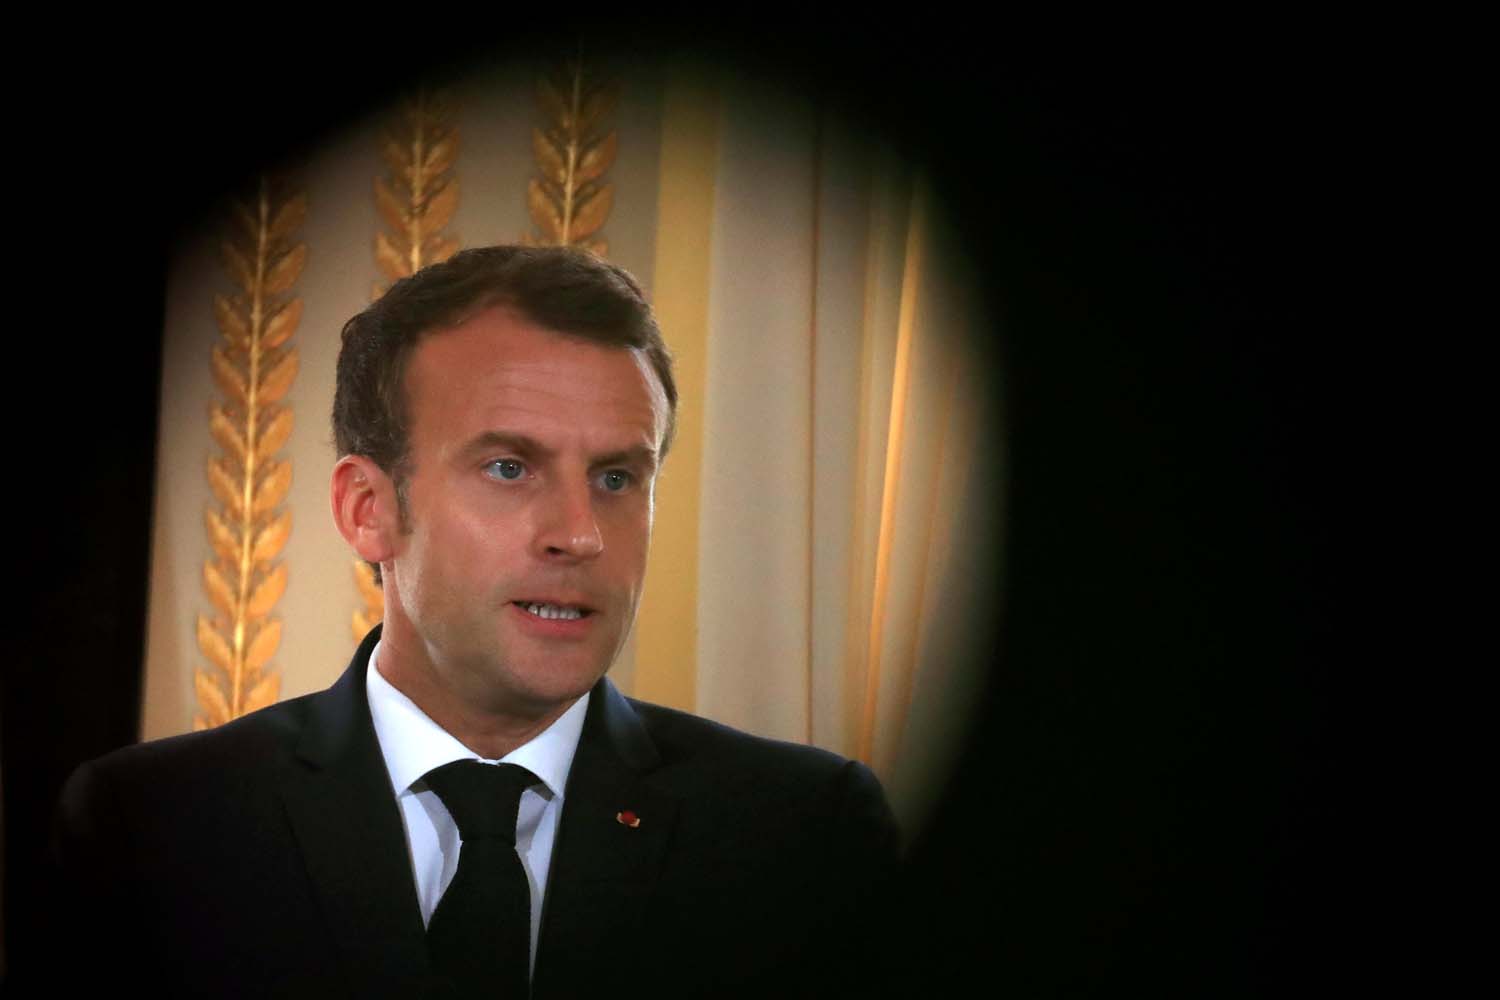 Victoria en la Copa del Mundo aumenta confianza de franceses, pero no la popularidad de Macron